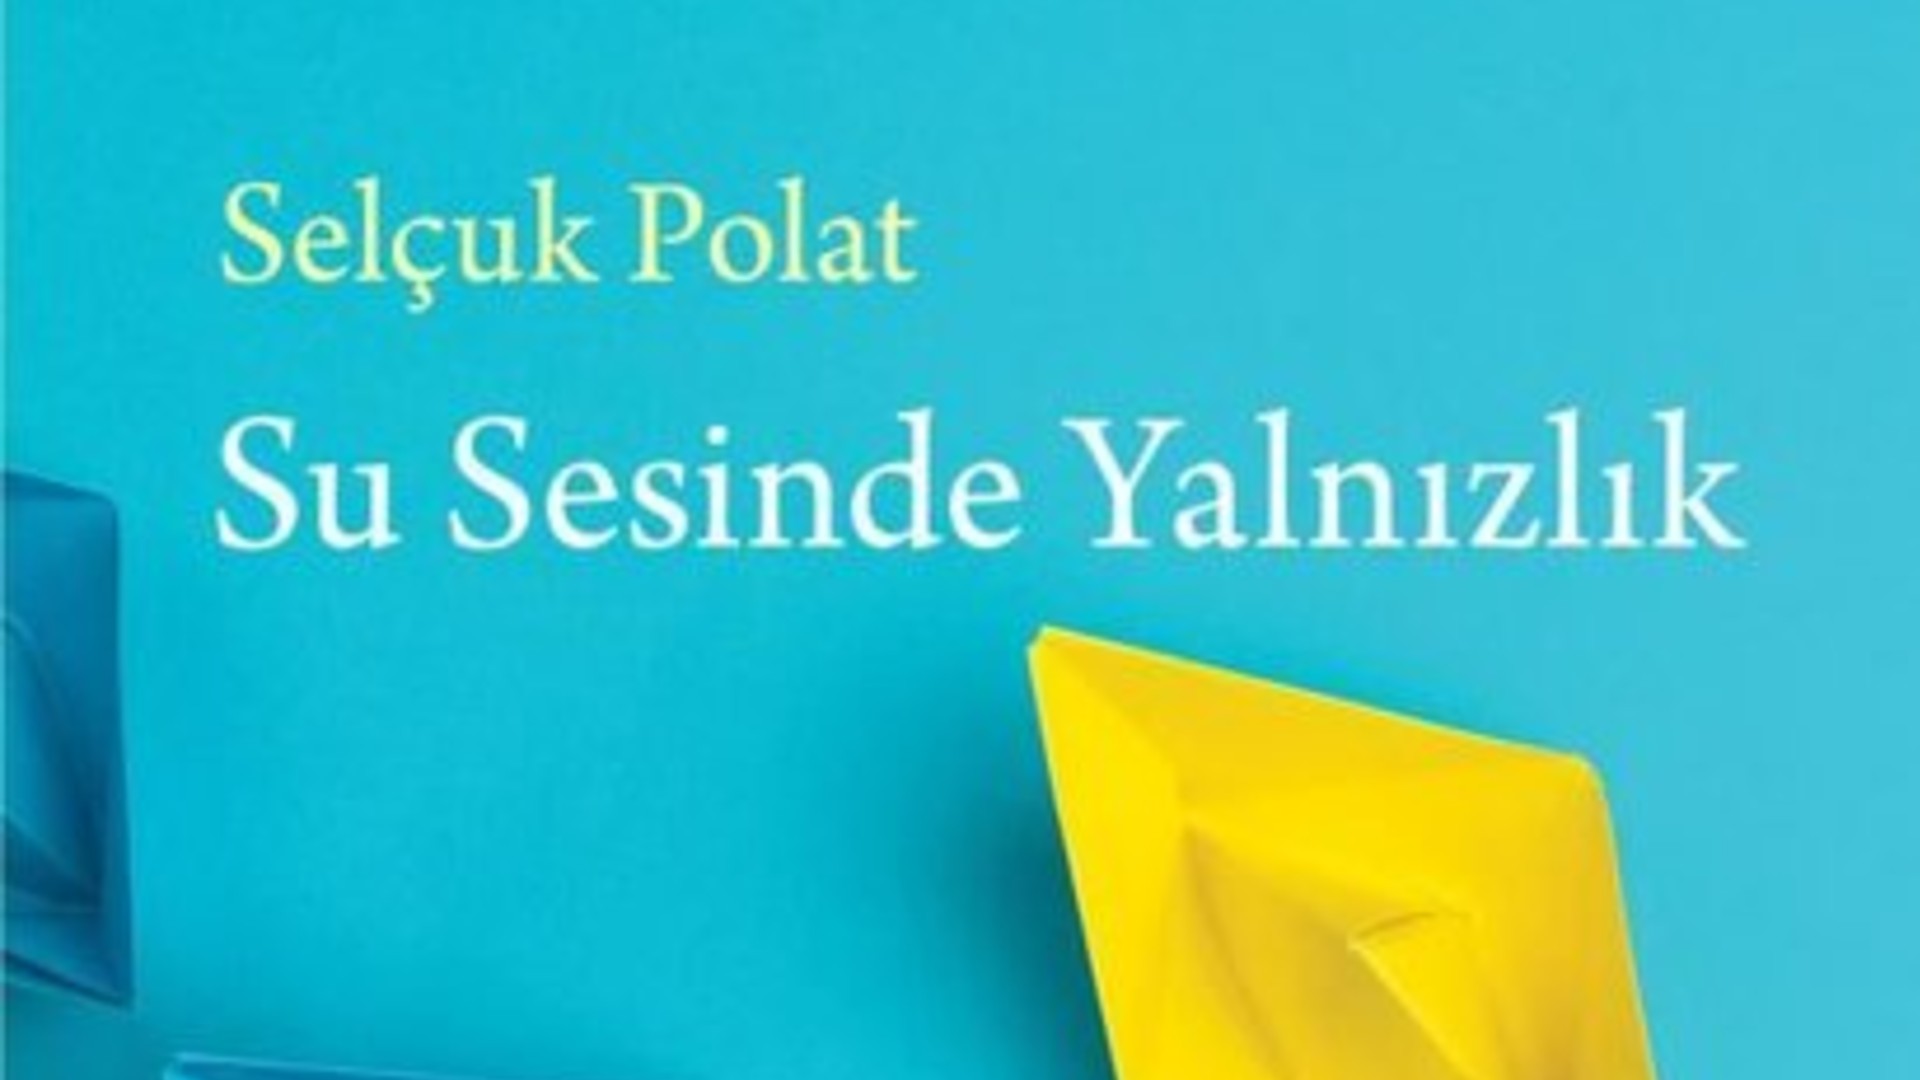 Selçuk Polat, “Su Sesinde Yalnızlık” adlı kitabını anlatıyor